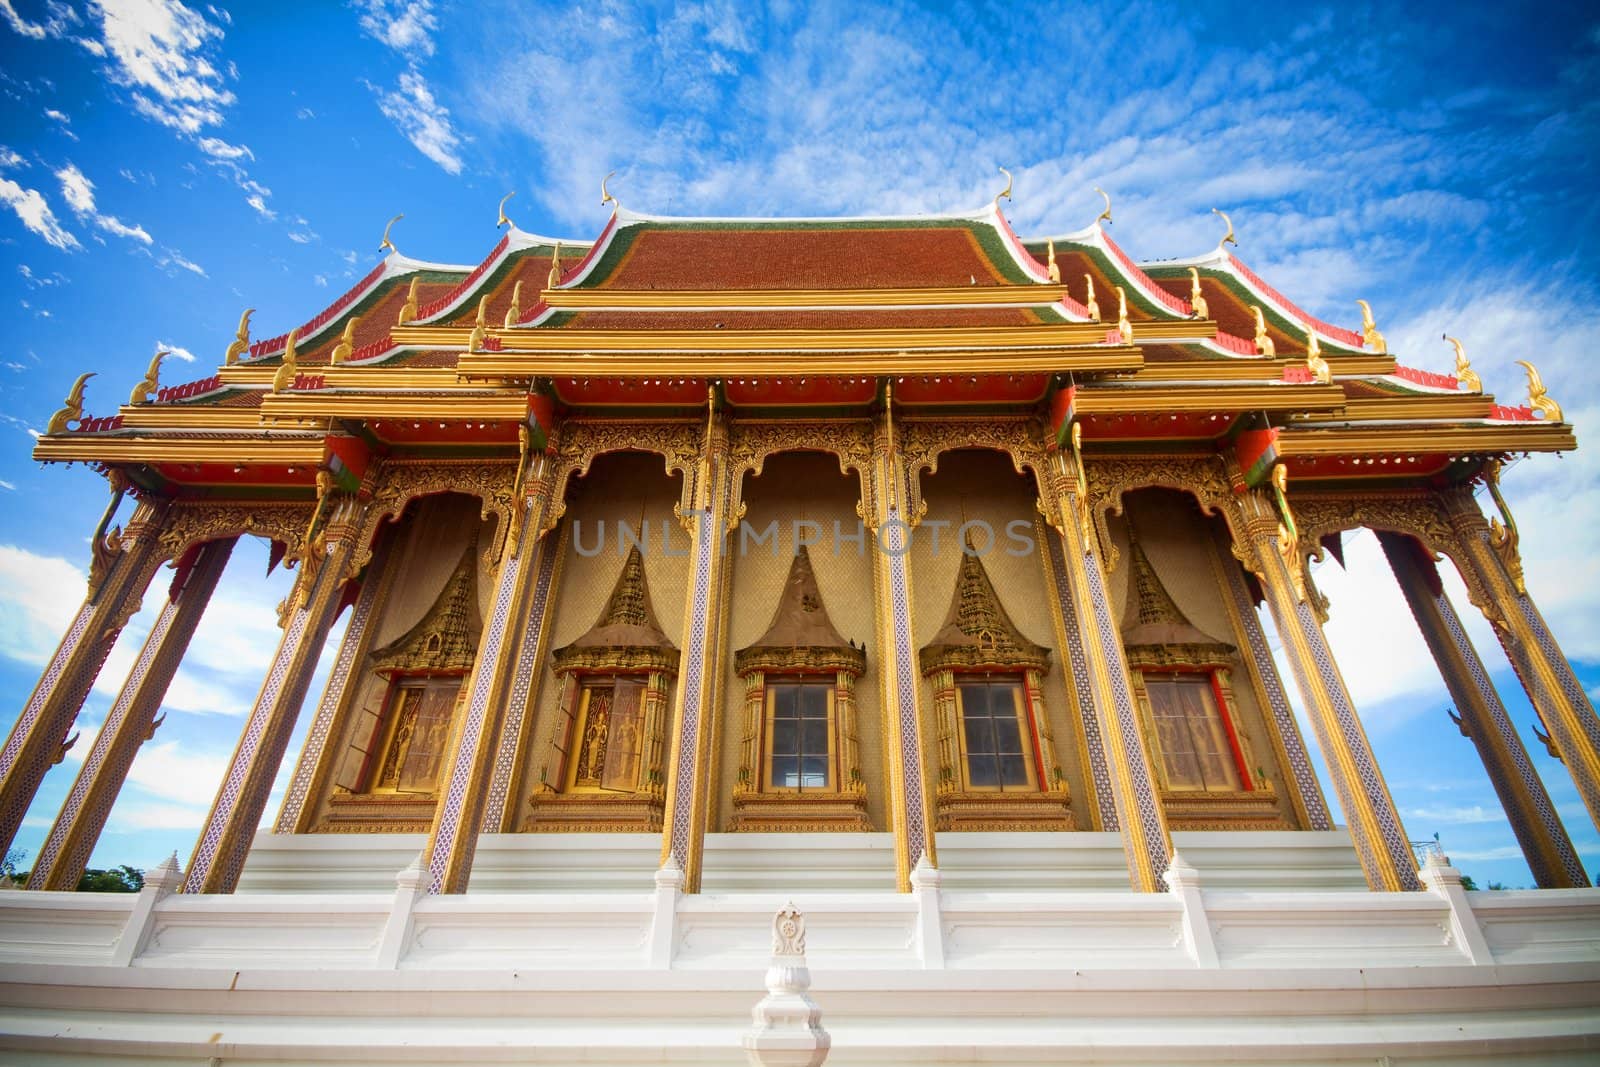 Wat Thailand by witthaya